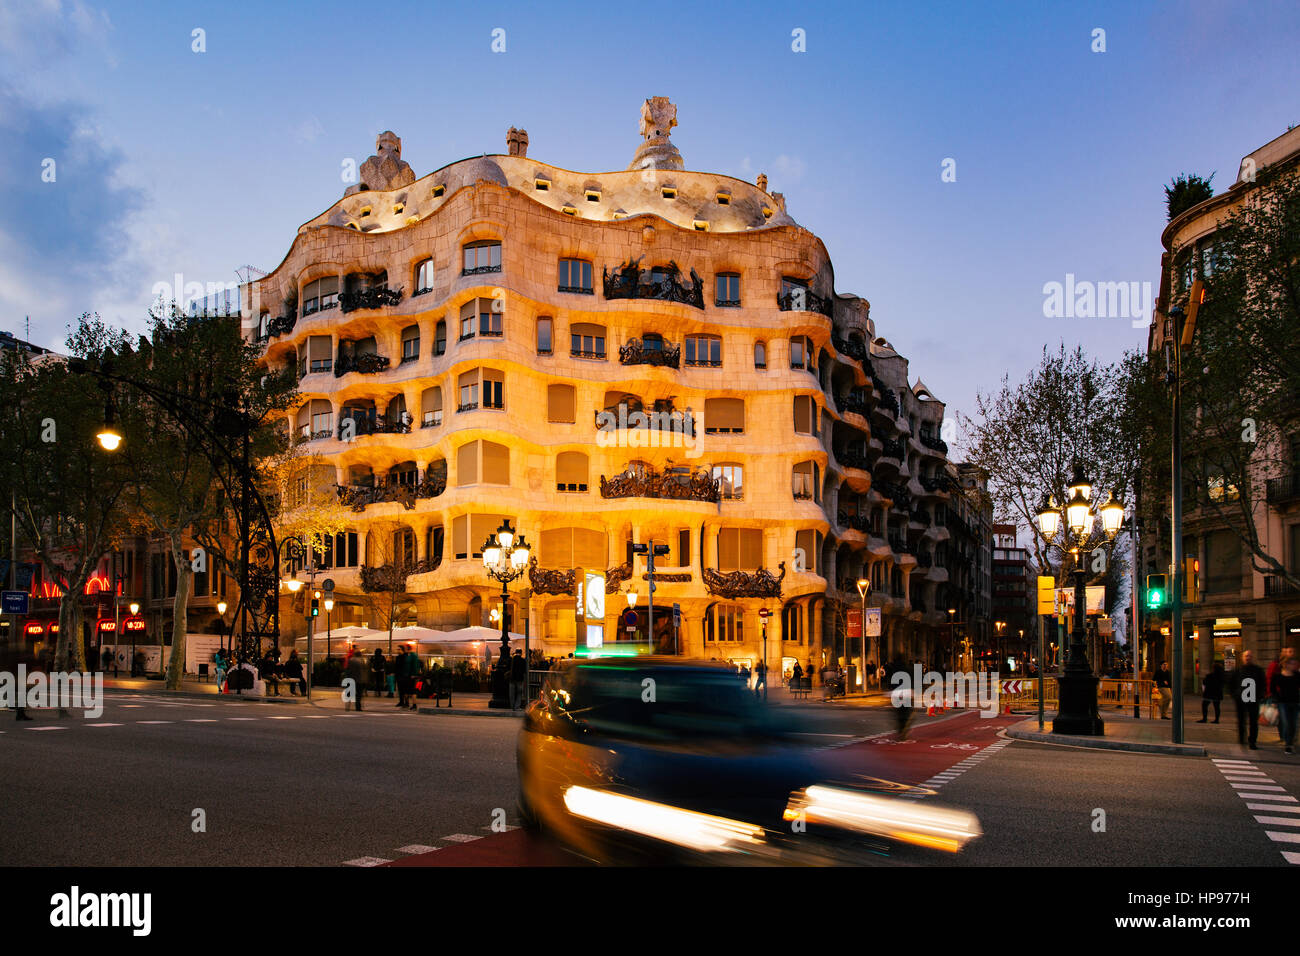 Casa Mila, La Pedrera, designed by architect Antonio Gaudi, Barcelona, Spain Stock Photo